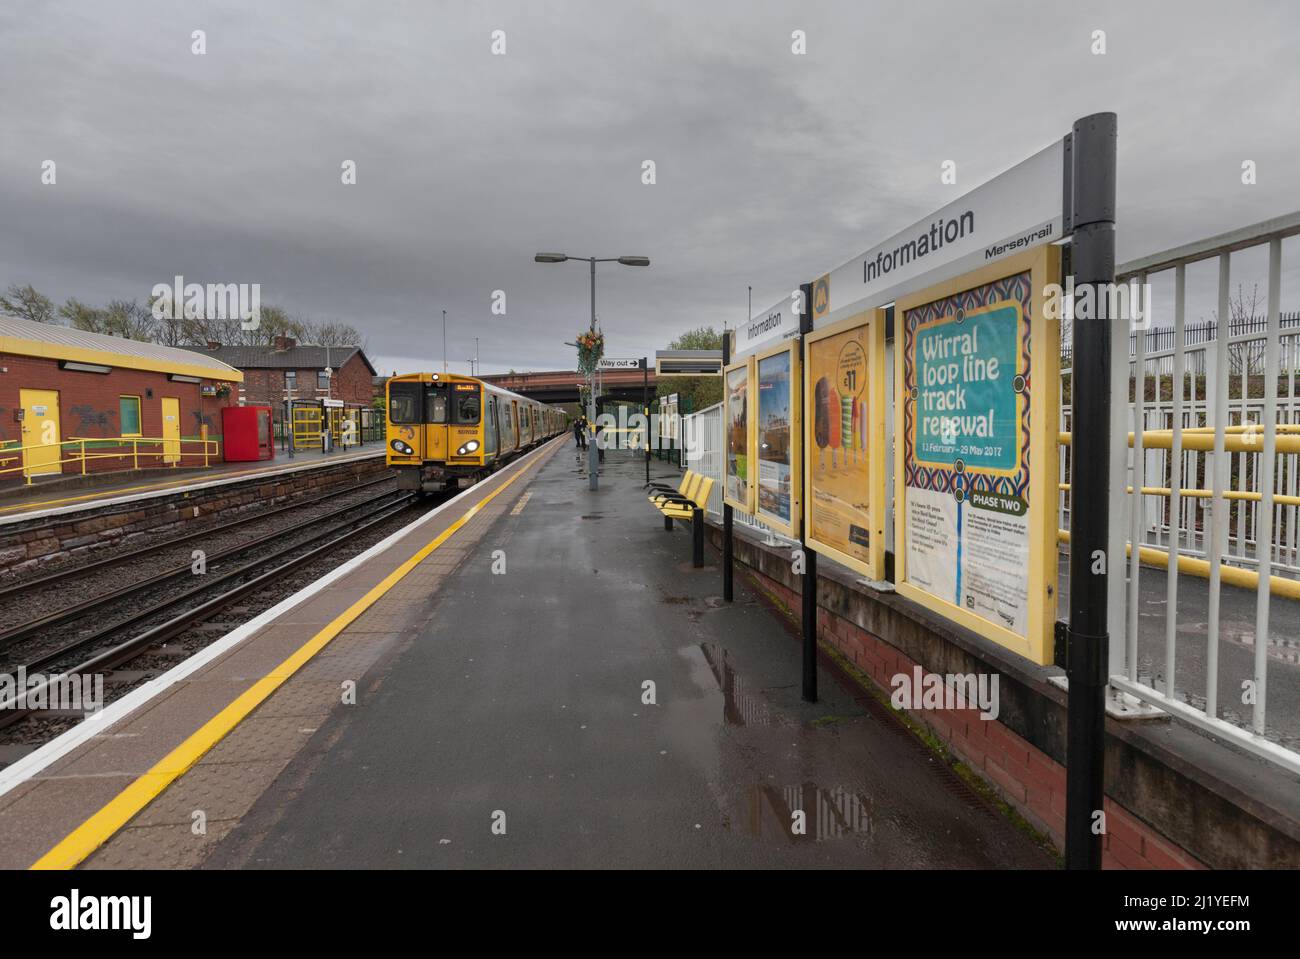 Merseyrail-Elektrozug der Baureihe 507 507032 am Bahnhof Aintree mit Informationsplakaten Stockfoto